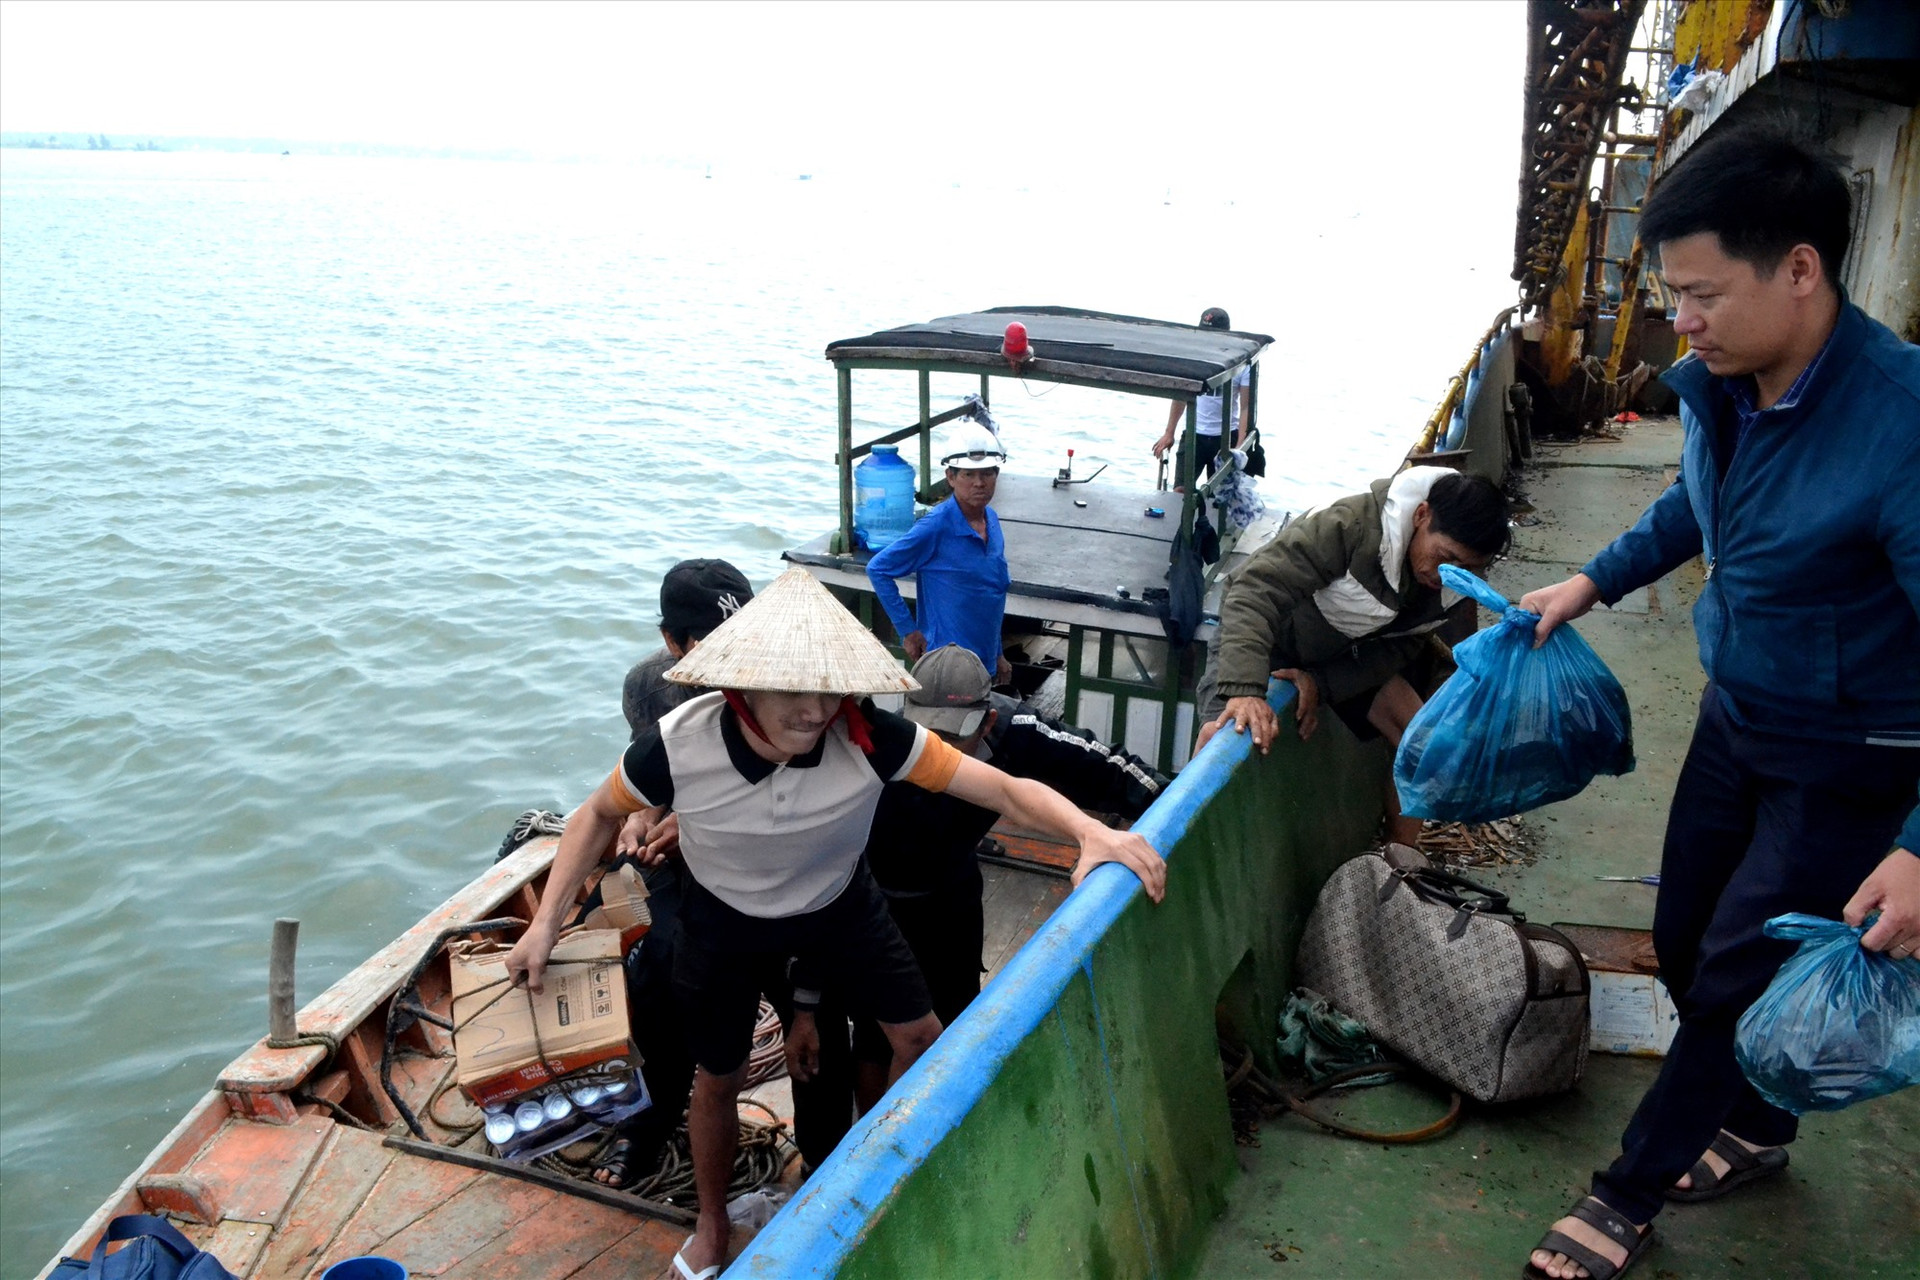 Phó Chủ tịch UBND xã Tam Giang Nguyễn Ngọc Vinh đón các bạn biển trở về trên tàu cá QNa-91829. Ảnh: Q.VIỆT